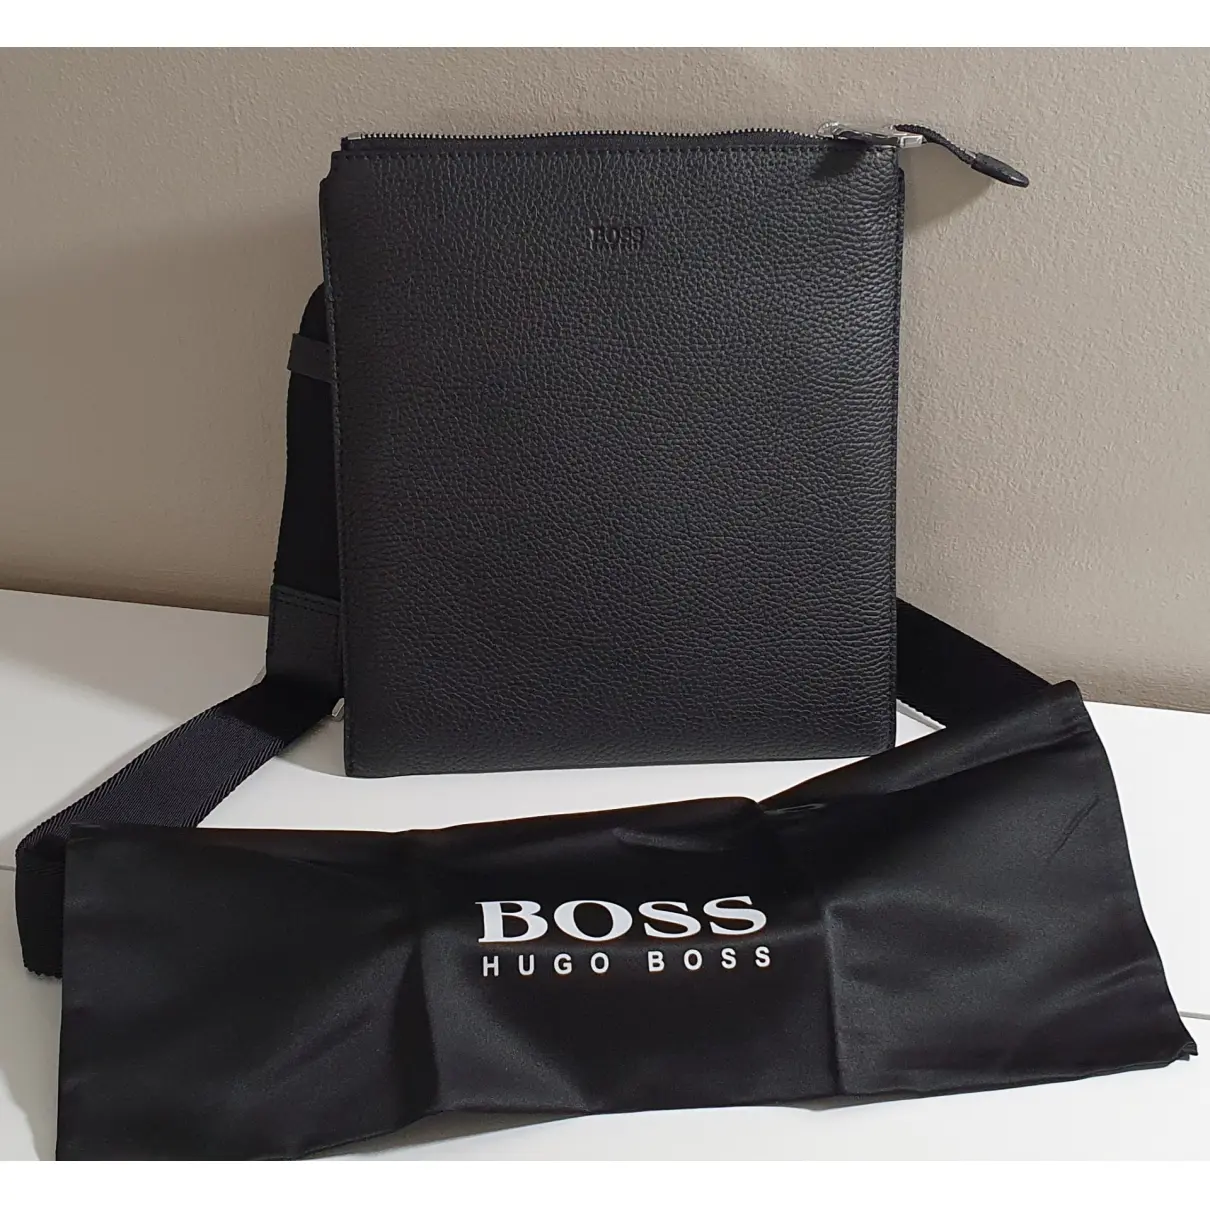 Buy Hugo Boss Leather bag online